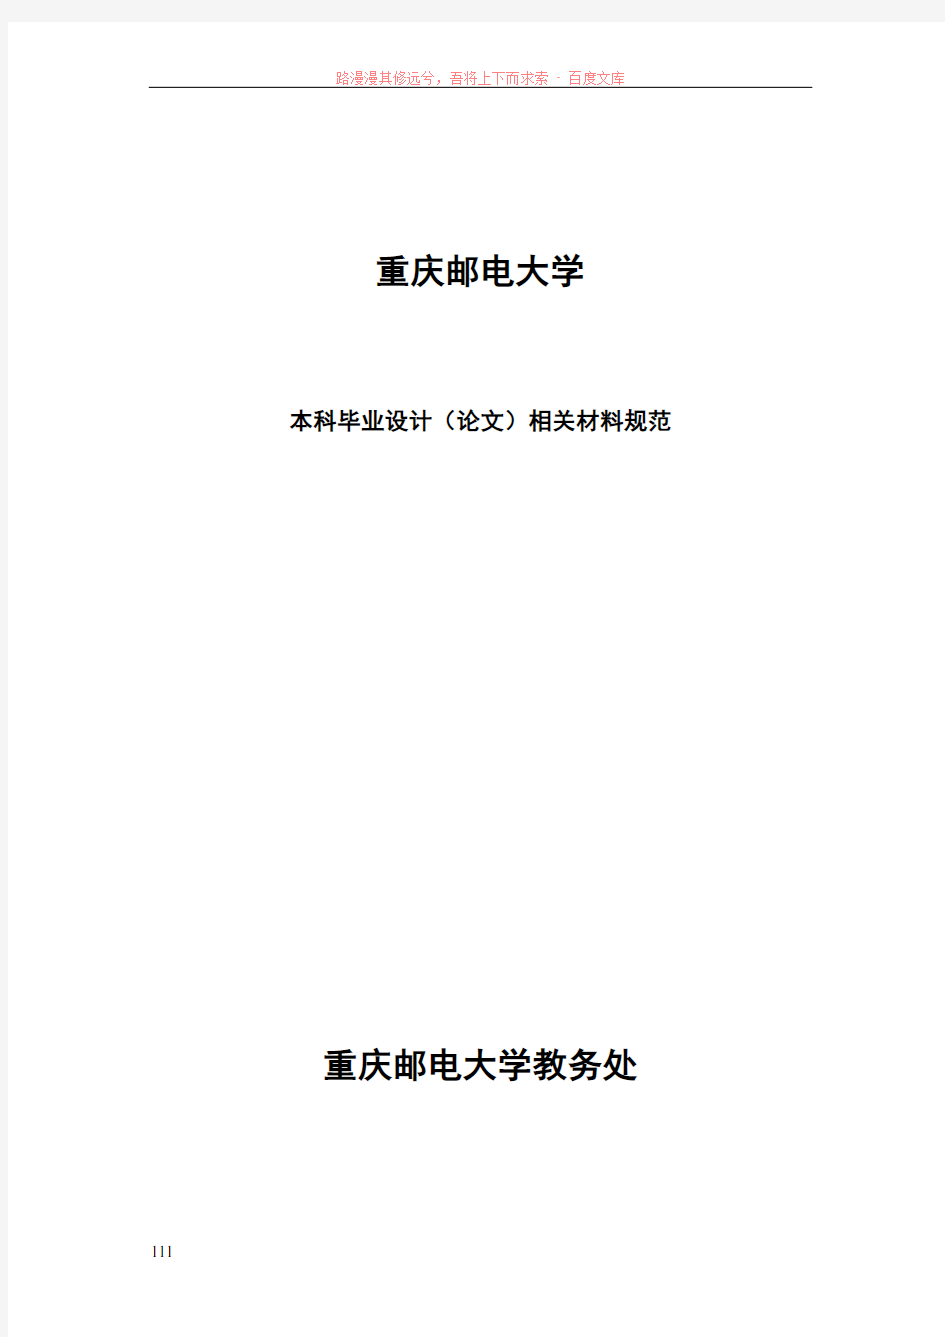 重庆邮电大学毕业设计(论文)材料规范